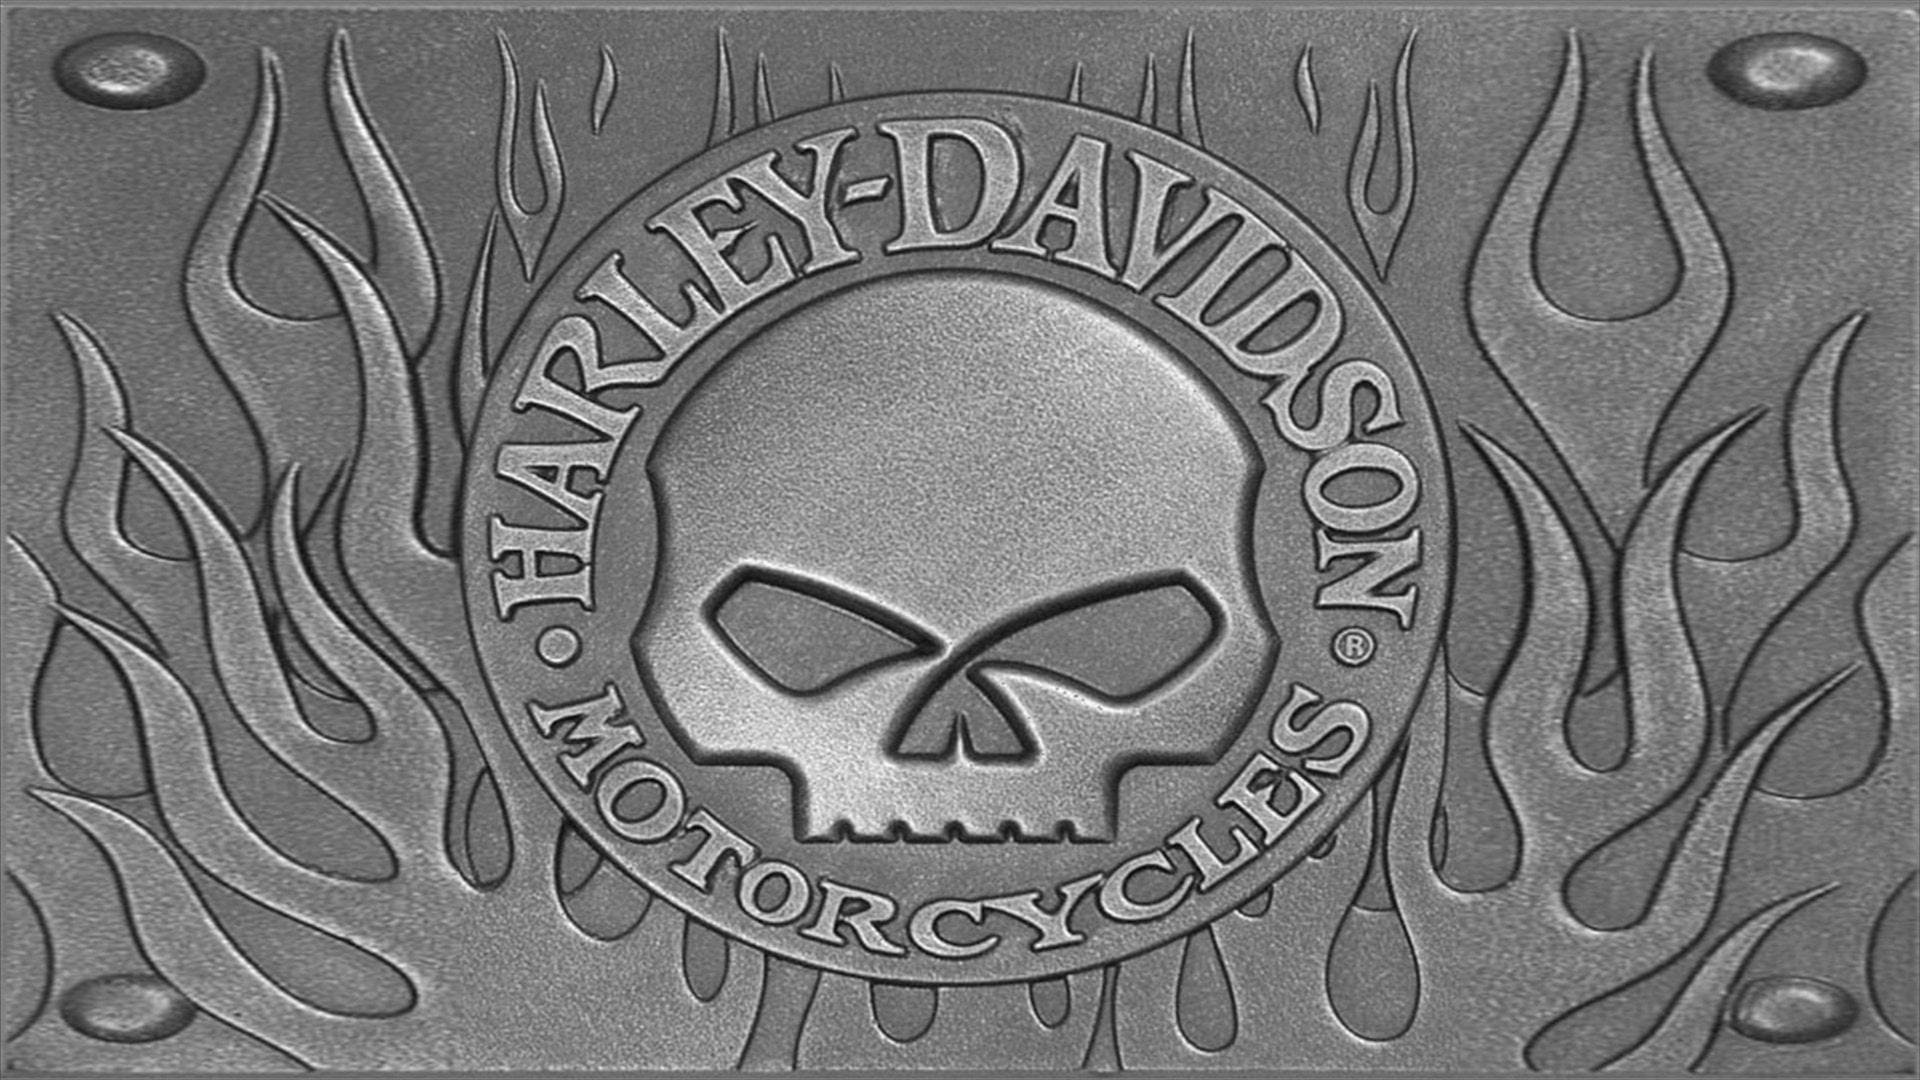 Emblemade Motocicleta Silver Haley Davidson. Papel de Parede